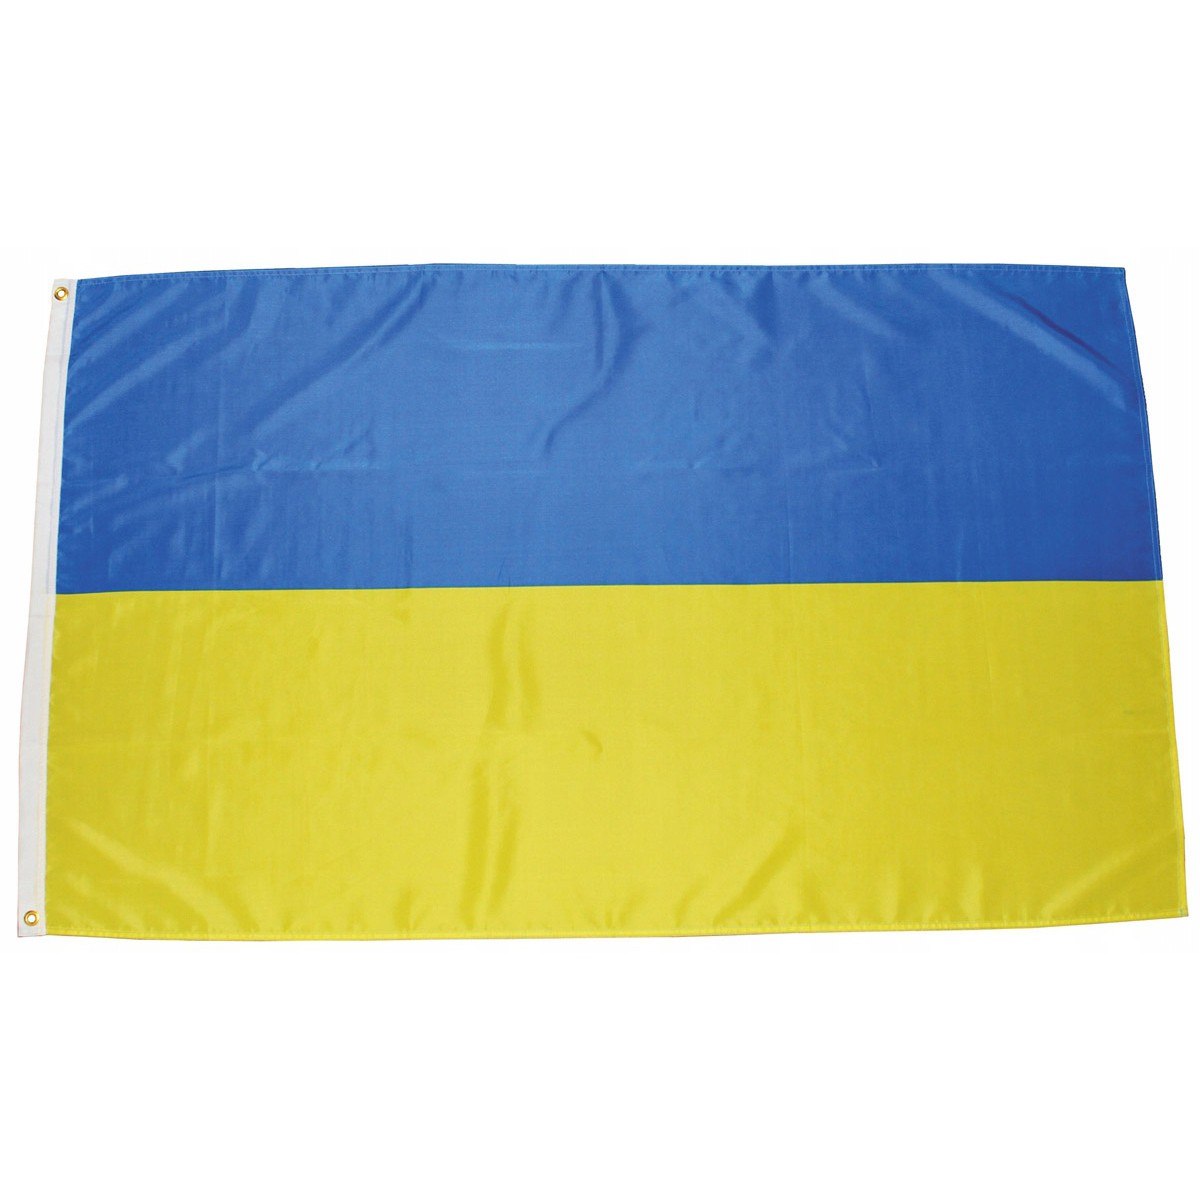 Ukrajinská vlajka 150x90cm obojstranná polyester megamix.sk